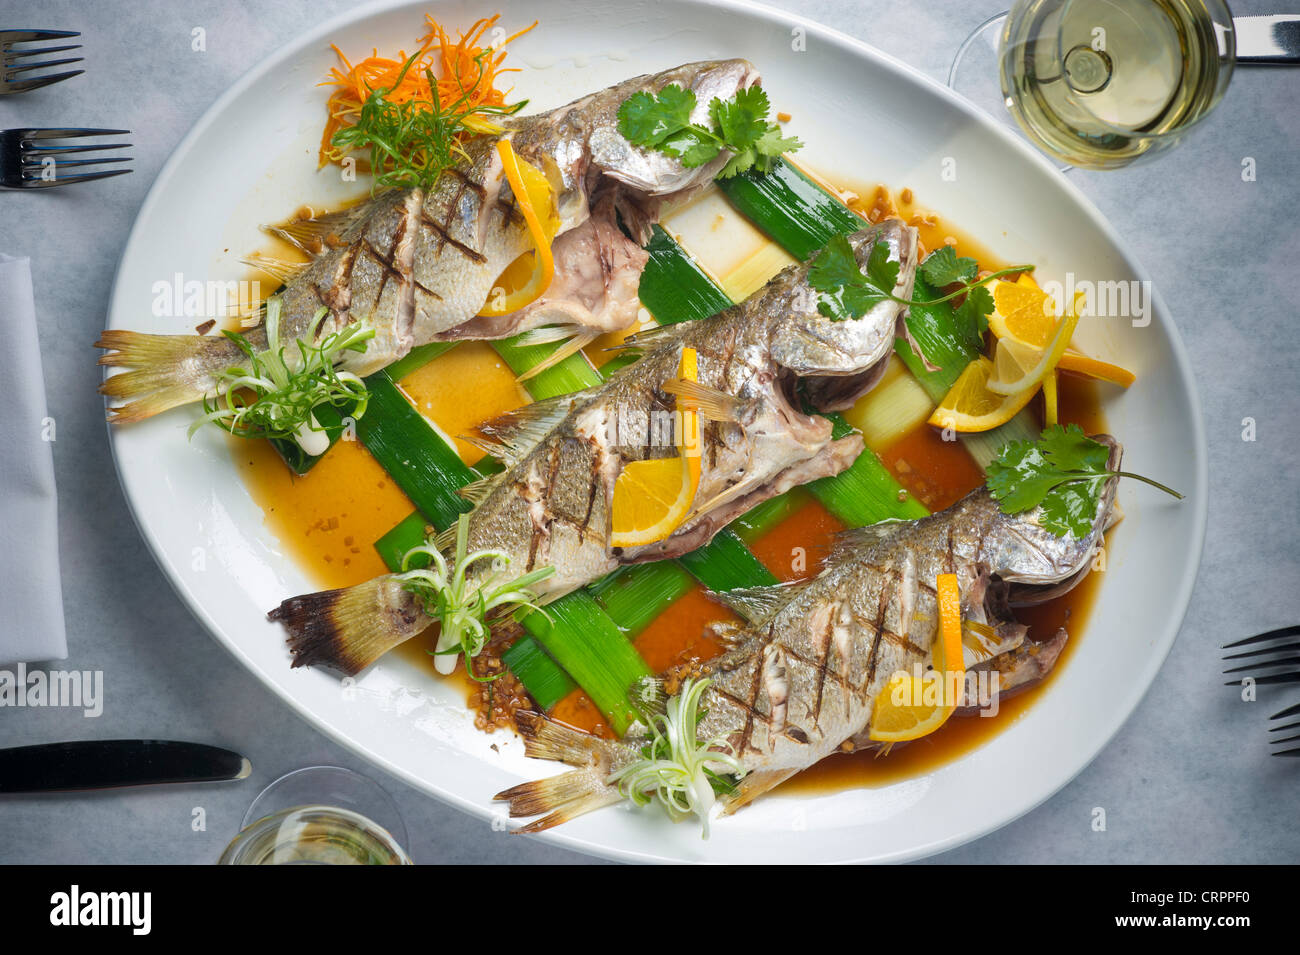 Fischgericht - Fisch auf Teller Stockfoto